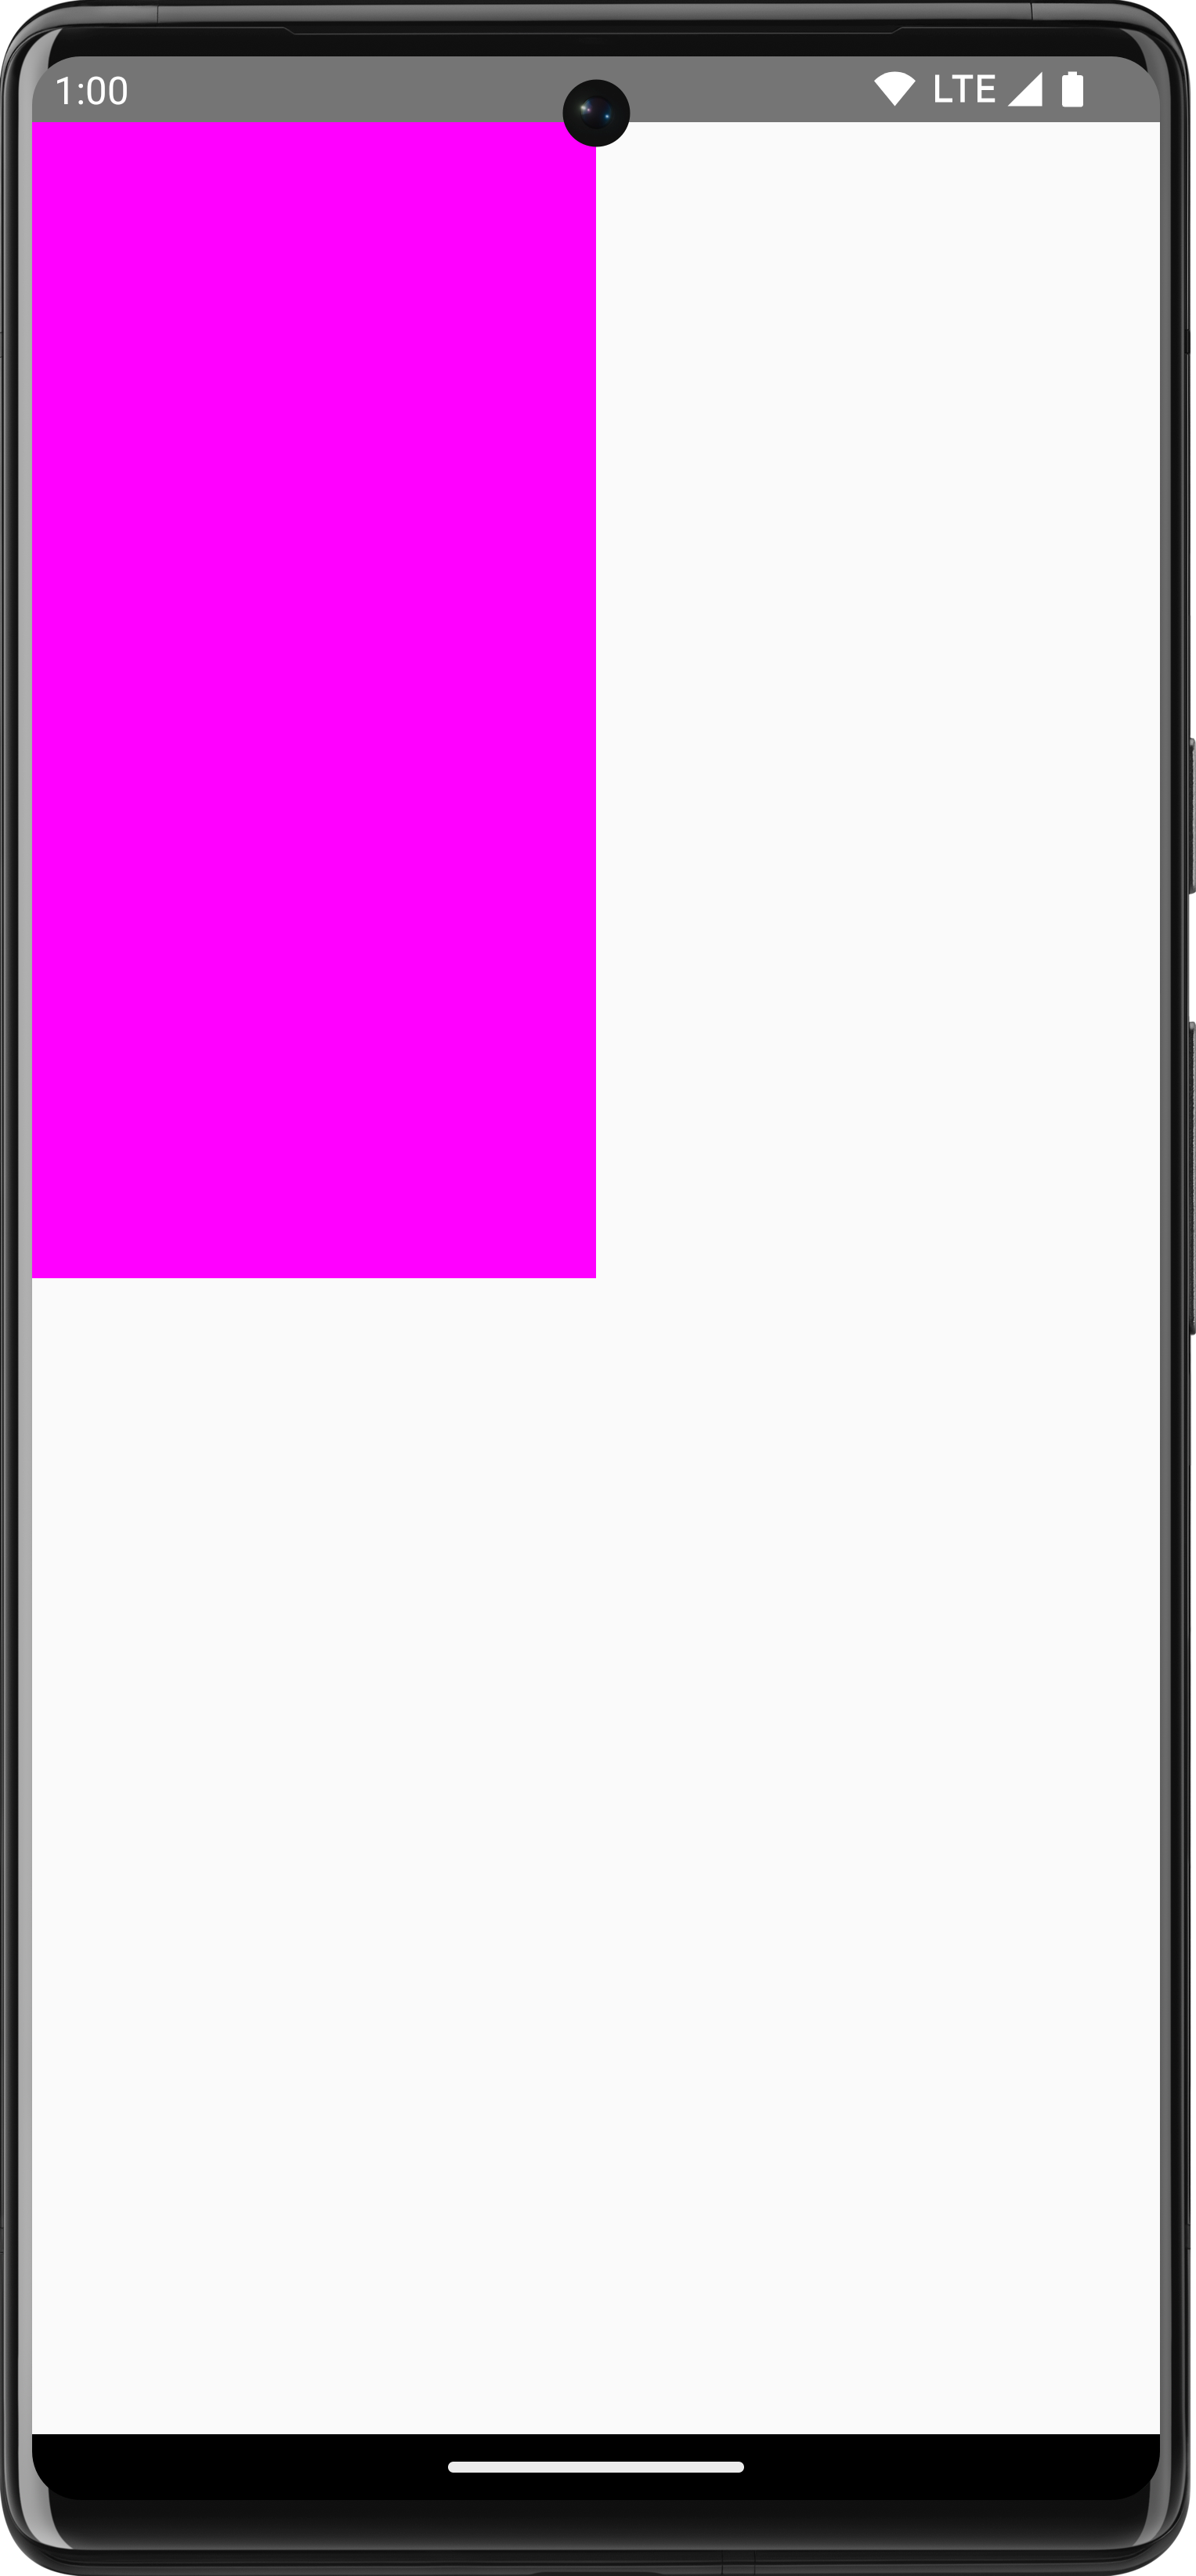 Pinkes Rechteck auf weißem Hintergrund, das ein Viertel des Bildschirms einnimmt